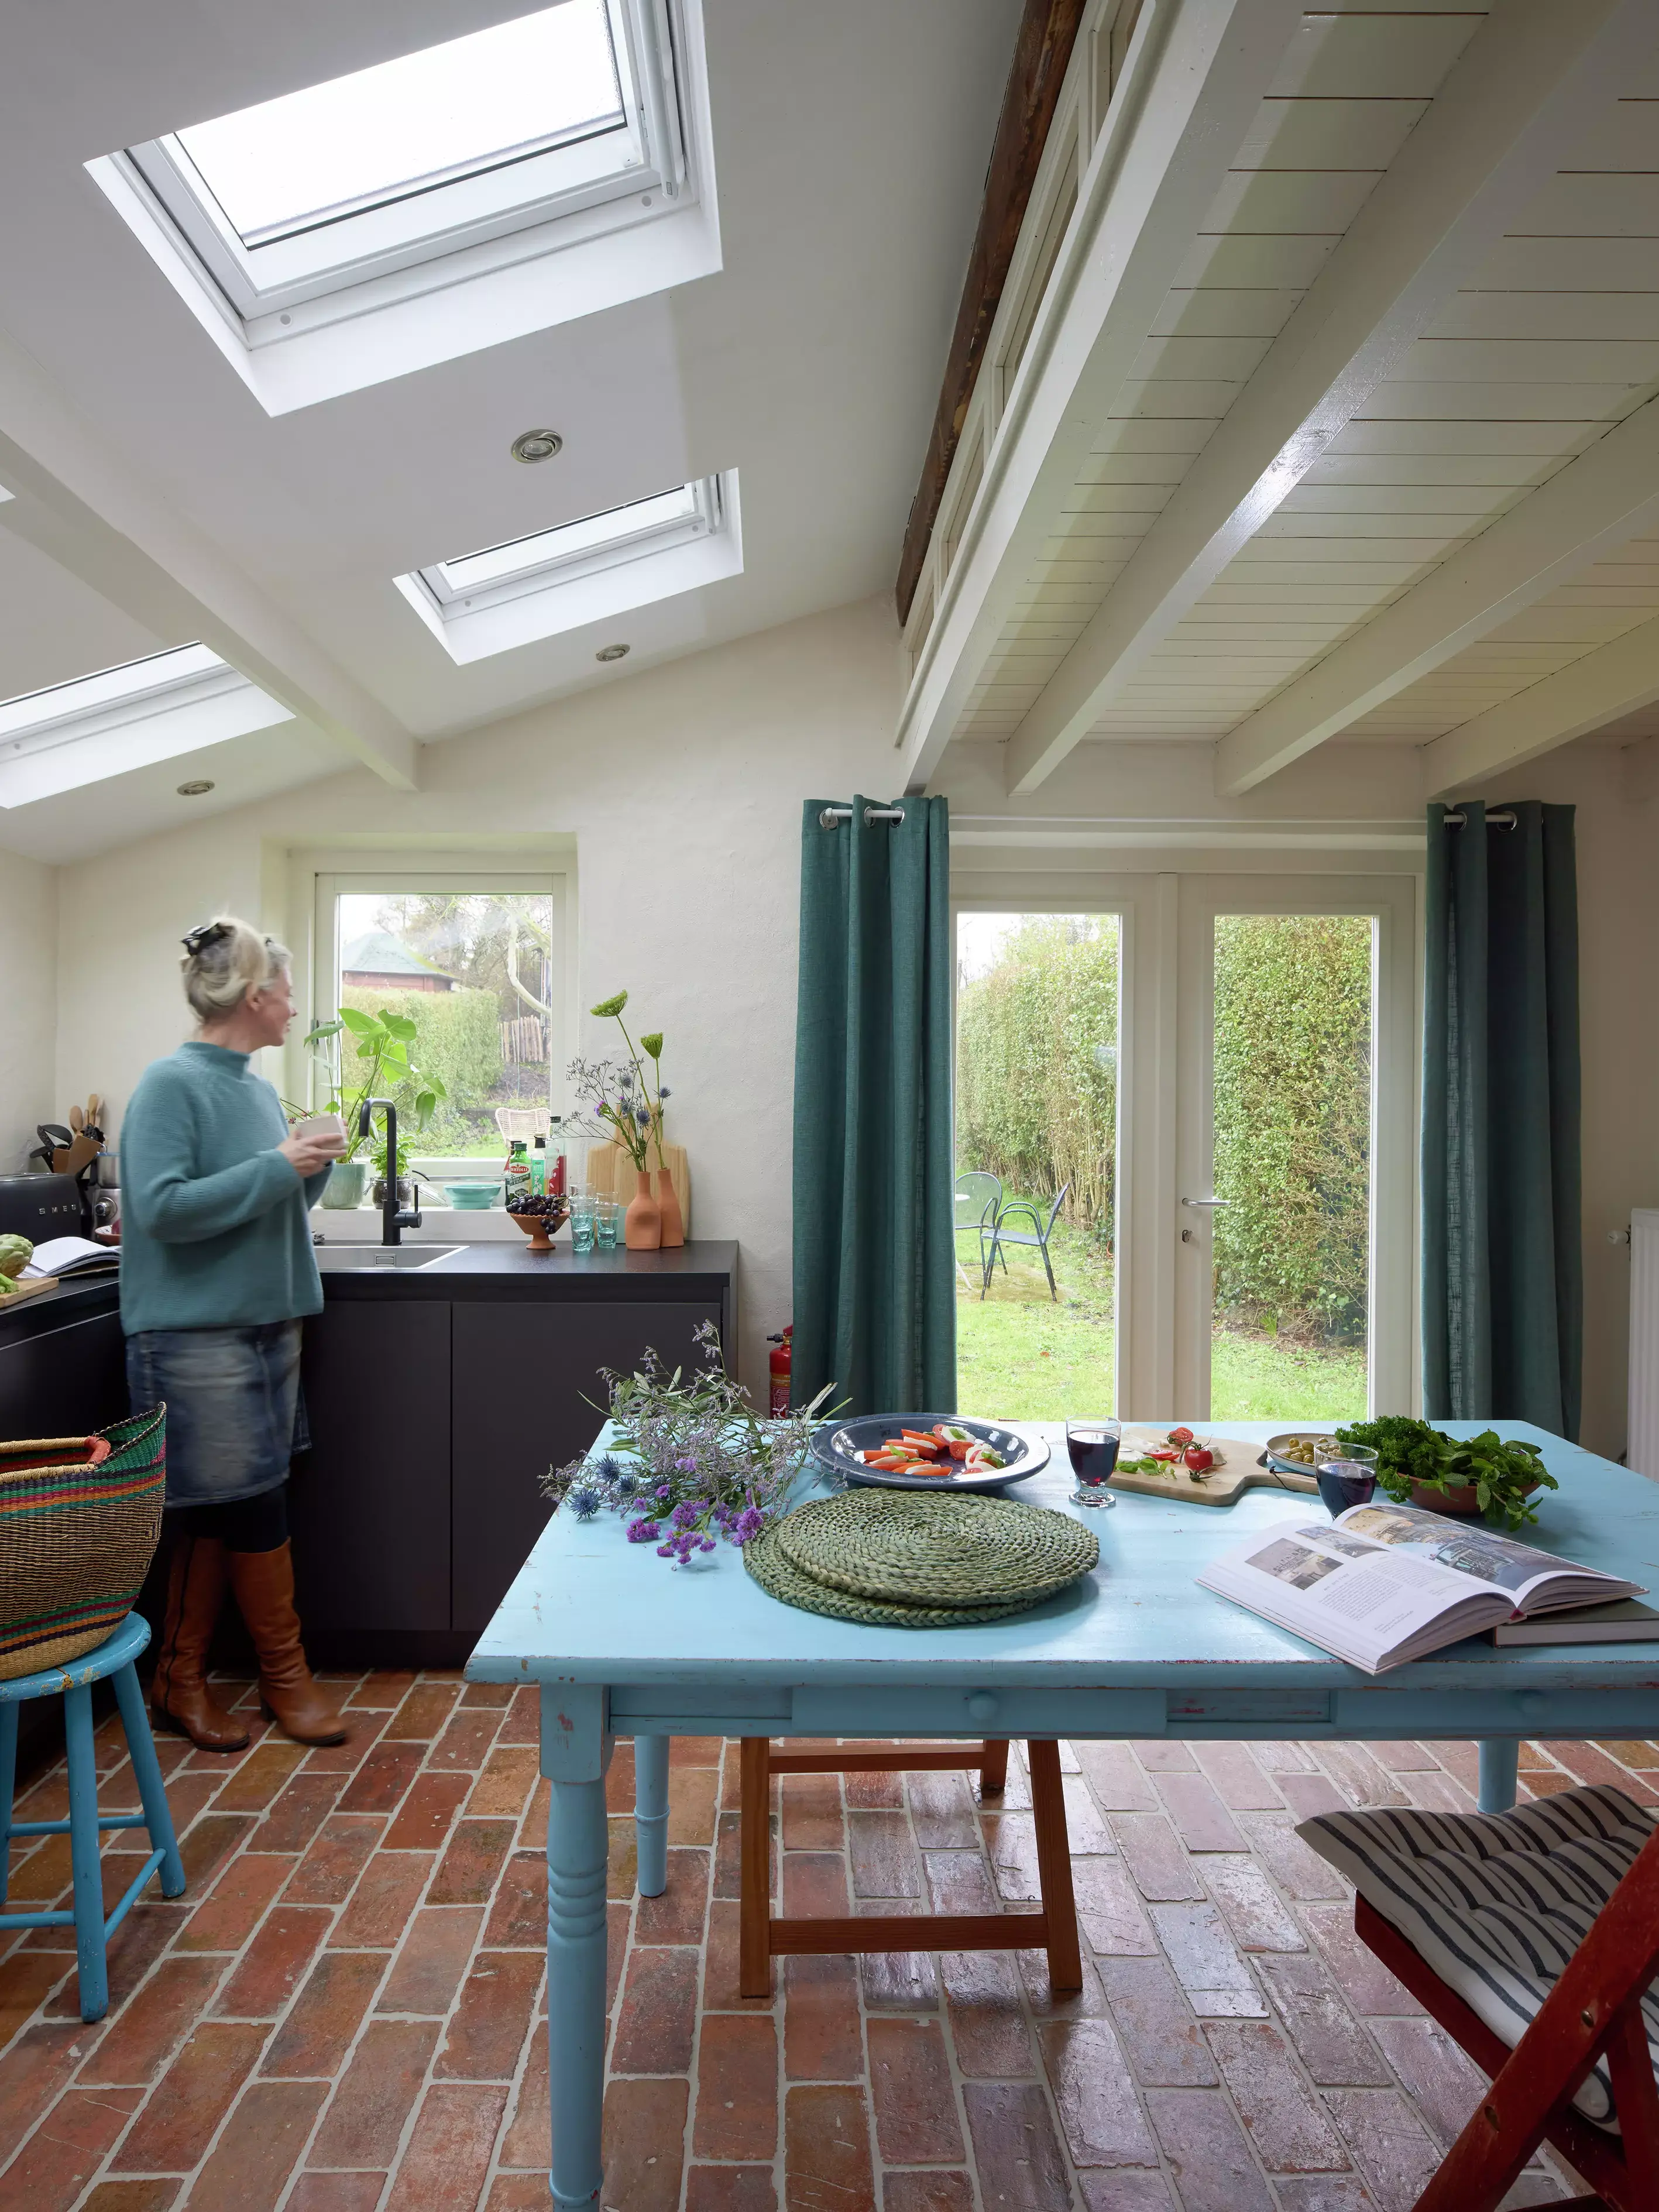 Cuisine confortable avec des carreaux en terre cuite et des fenêtres de toit VELUX donnant sur un jardin.